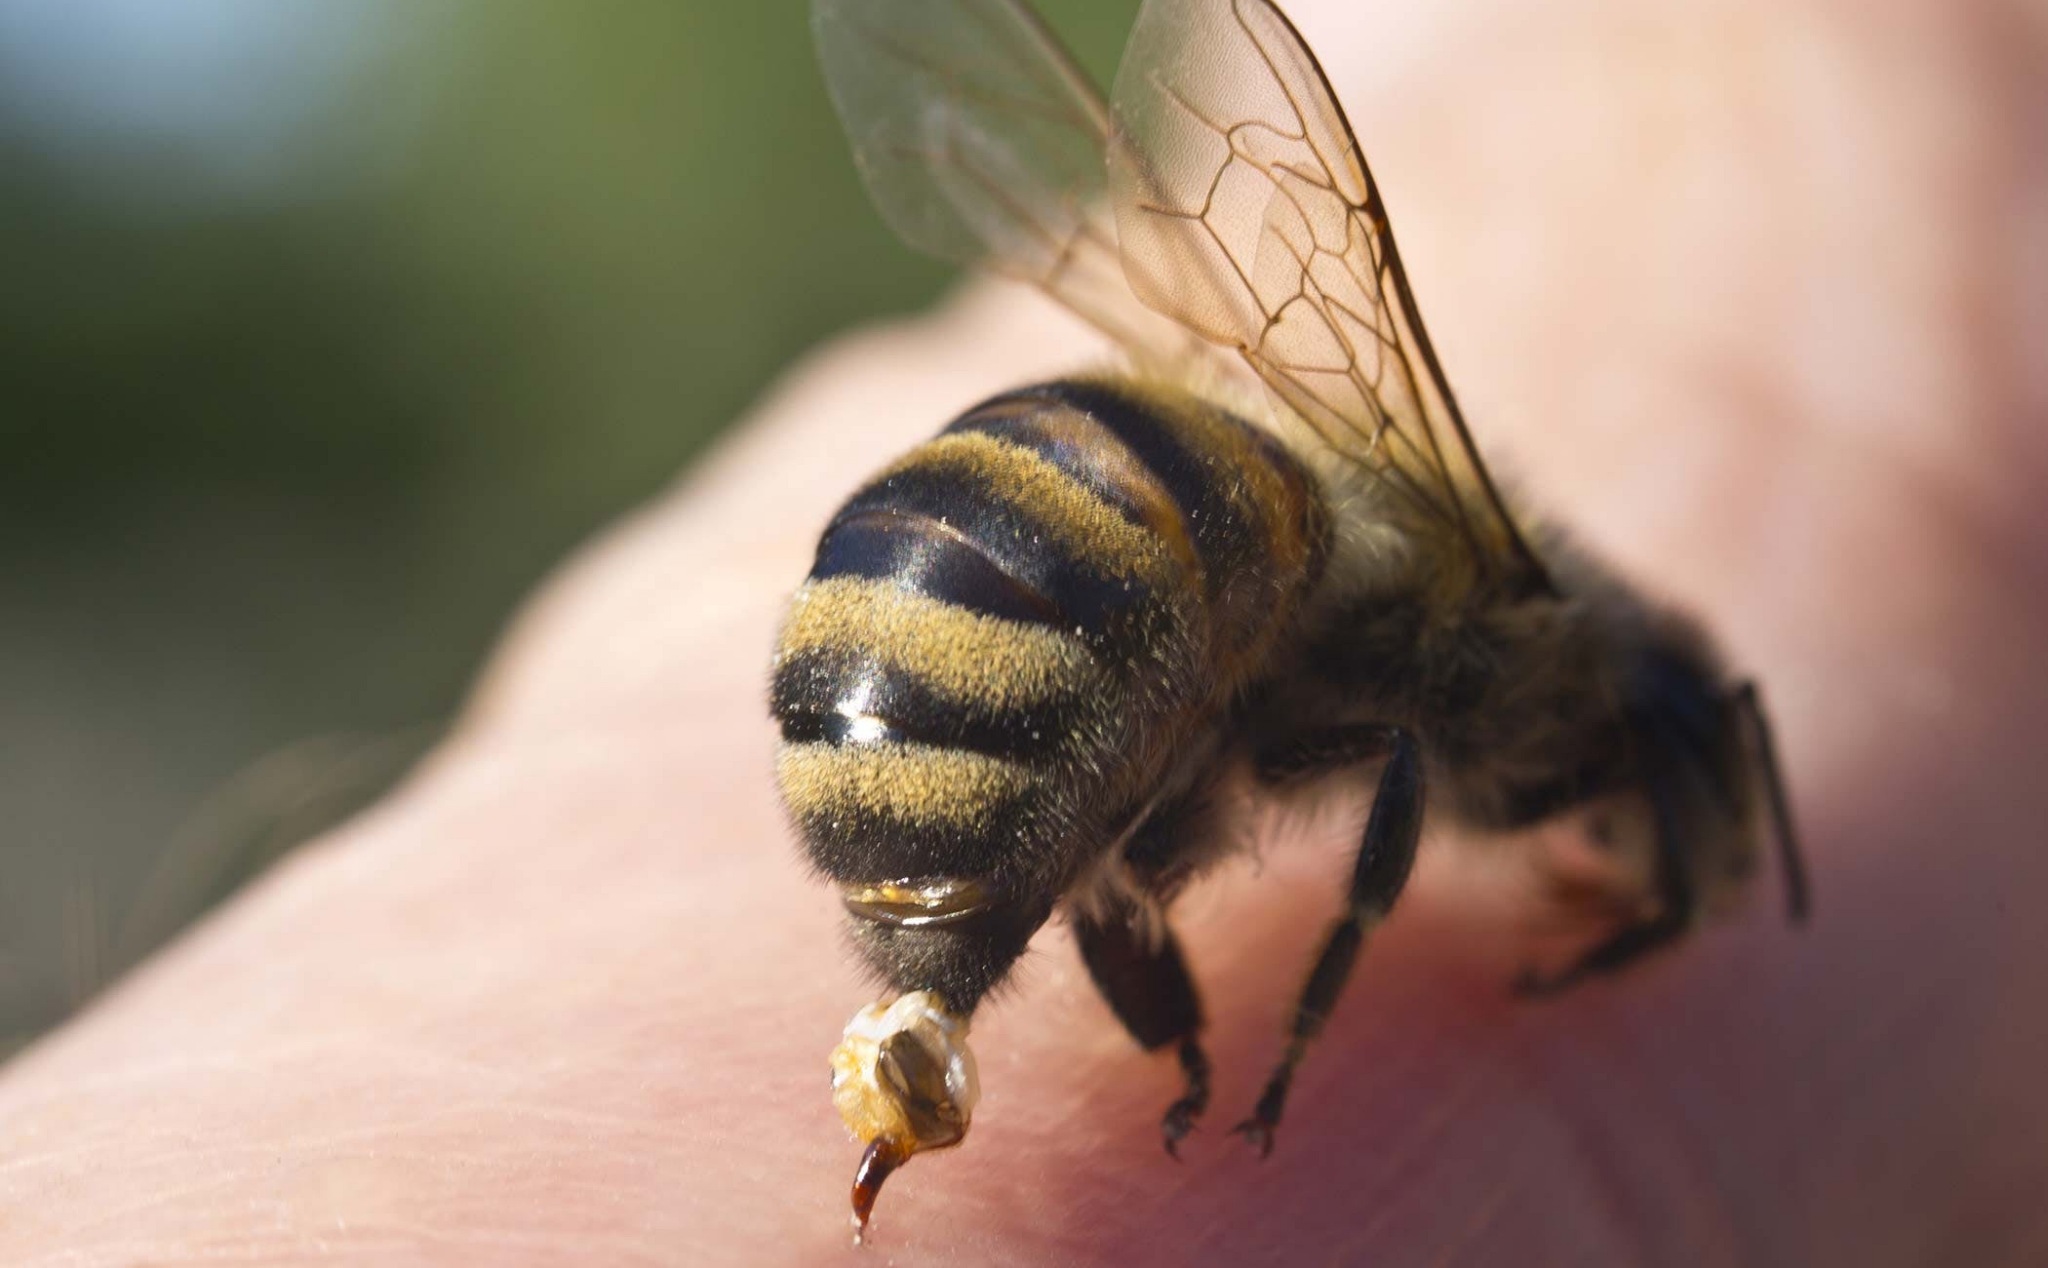 Bạn đang gặp vấn đề với những con ong trên sân nhà? Hãy xem ngay hình ảnh về cách xử lý nhanh sự xuất hiện của chúng. Chúng ta sẽ cùng nhau tìm hiểu và áp dụng những kỹ năng để giải quyết tình huống đó một cách hiệu quả.